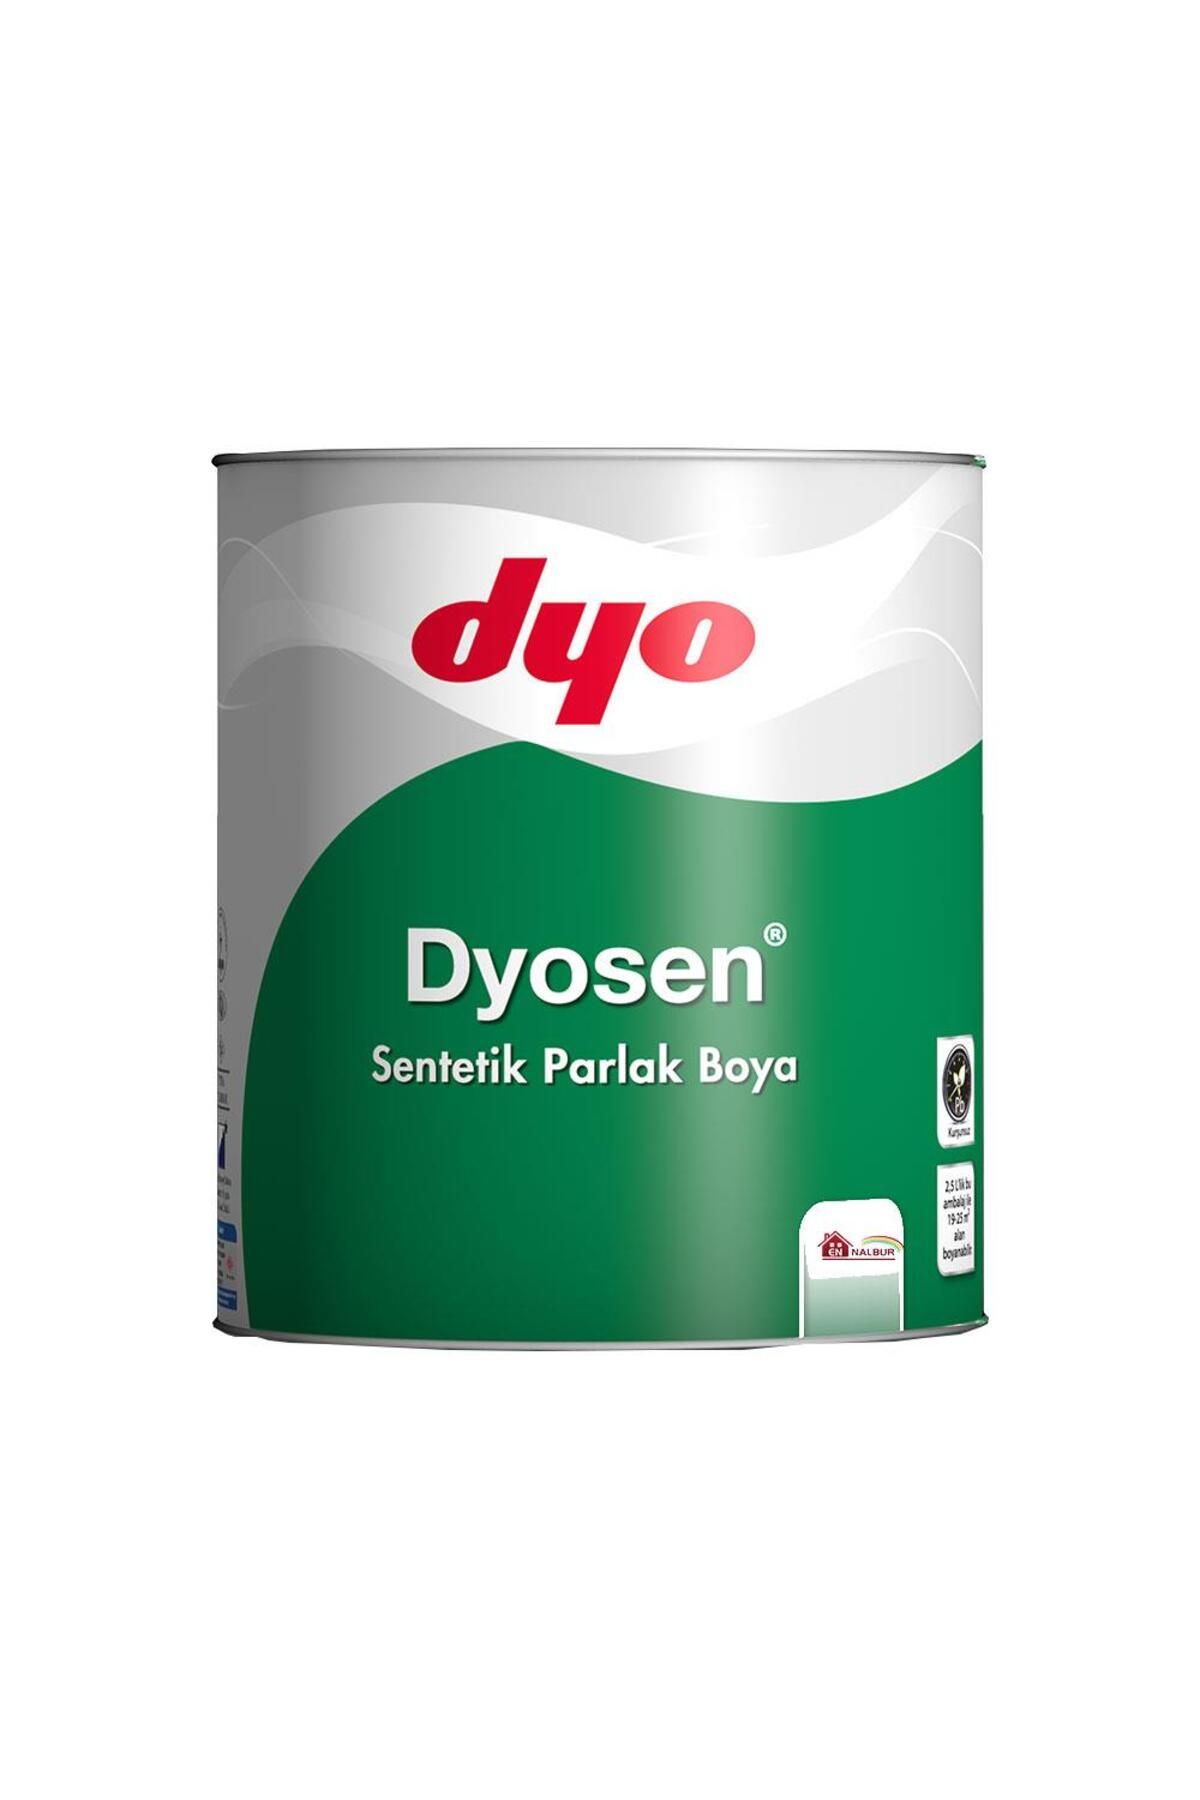 Dyo Dyosen Sentetik Parlak Boya 0,75 LT Kumsal